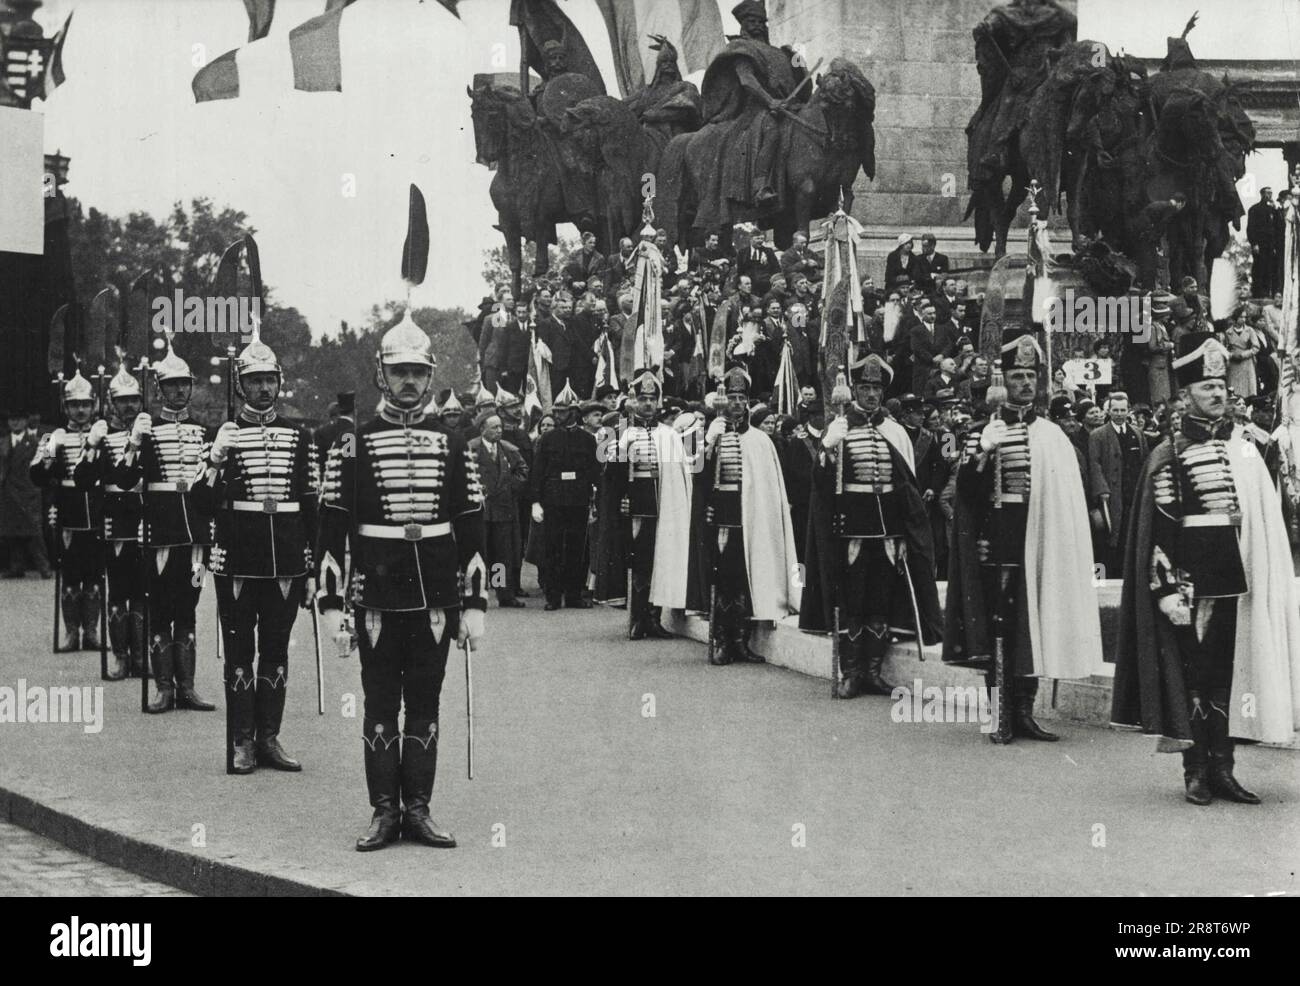 Gedenktag in Ungarn - in Budapest wurde unter Beteiligung der gesamten Bevölkerung des Gedenkfeiertags gefeiert. Mitglieder der Leibgarde unter der Krongarde ziehen weiter. 1. August 1933. (Foto von Presse-Photo G.M.B.H.). Stockfoto